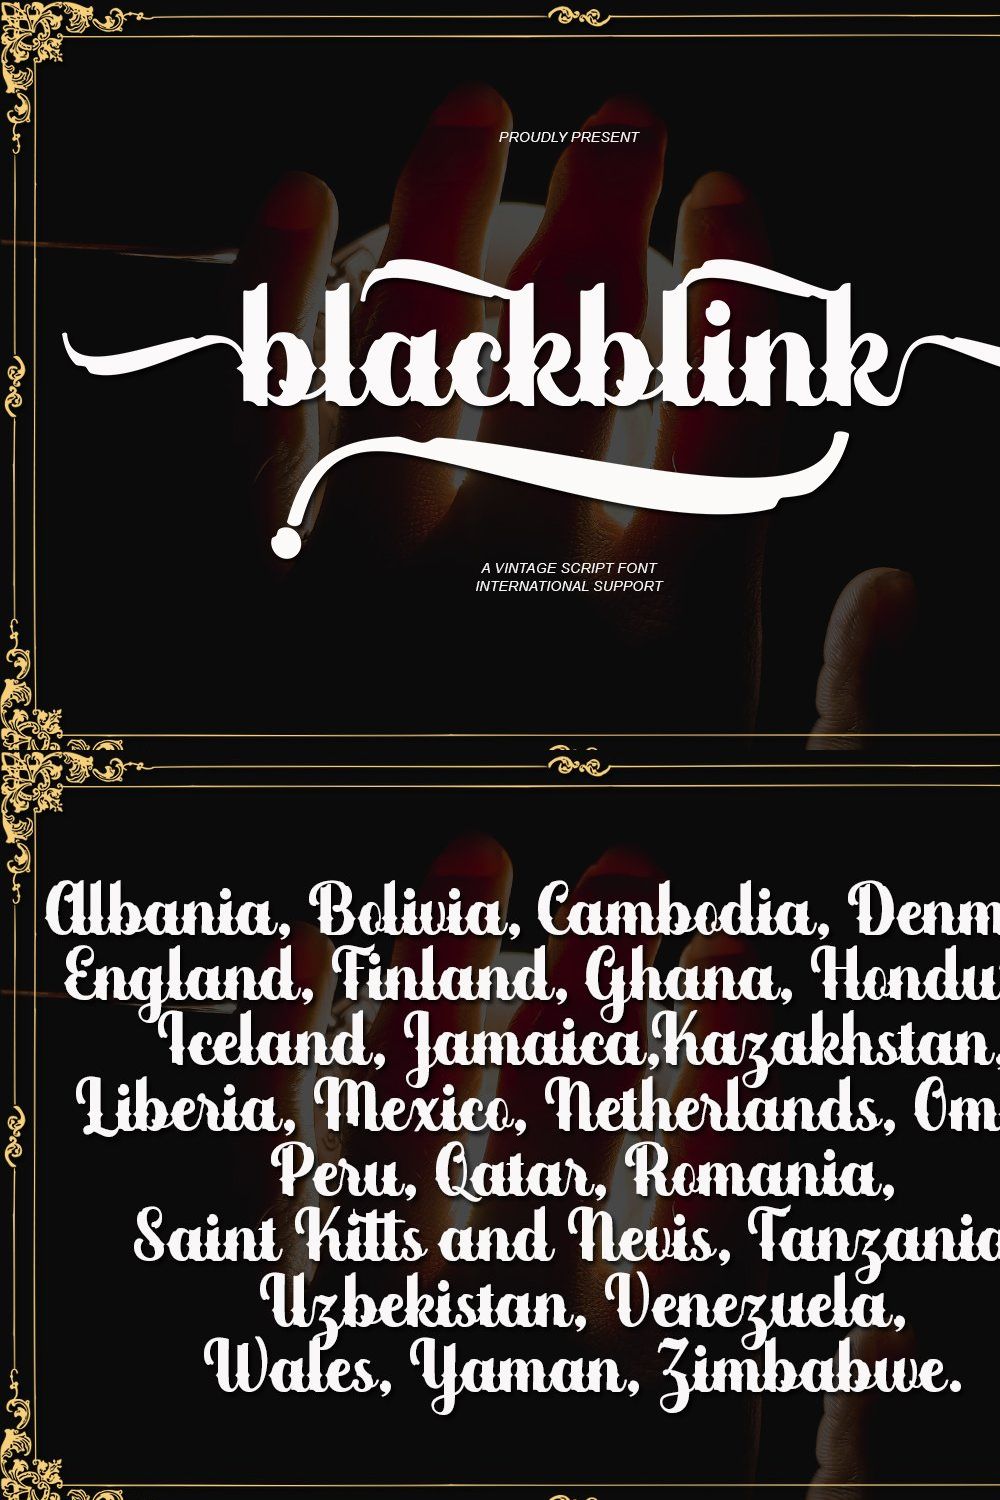 Blackblink pinterest preview image.